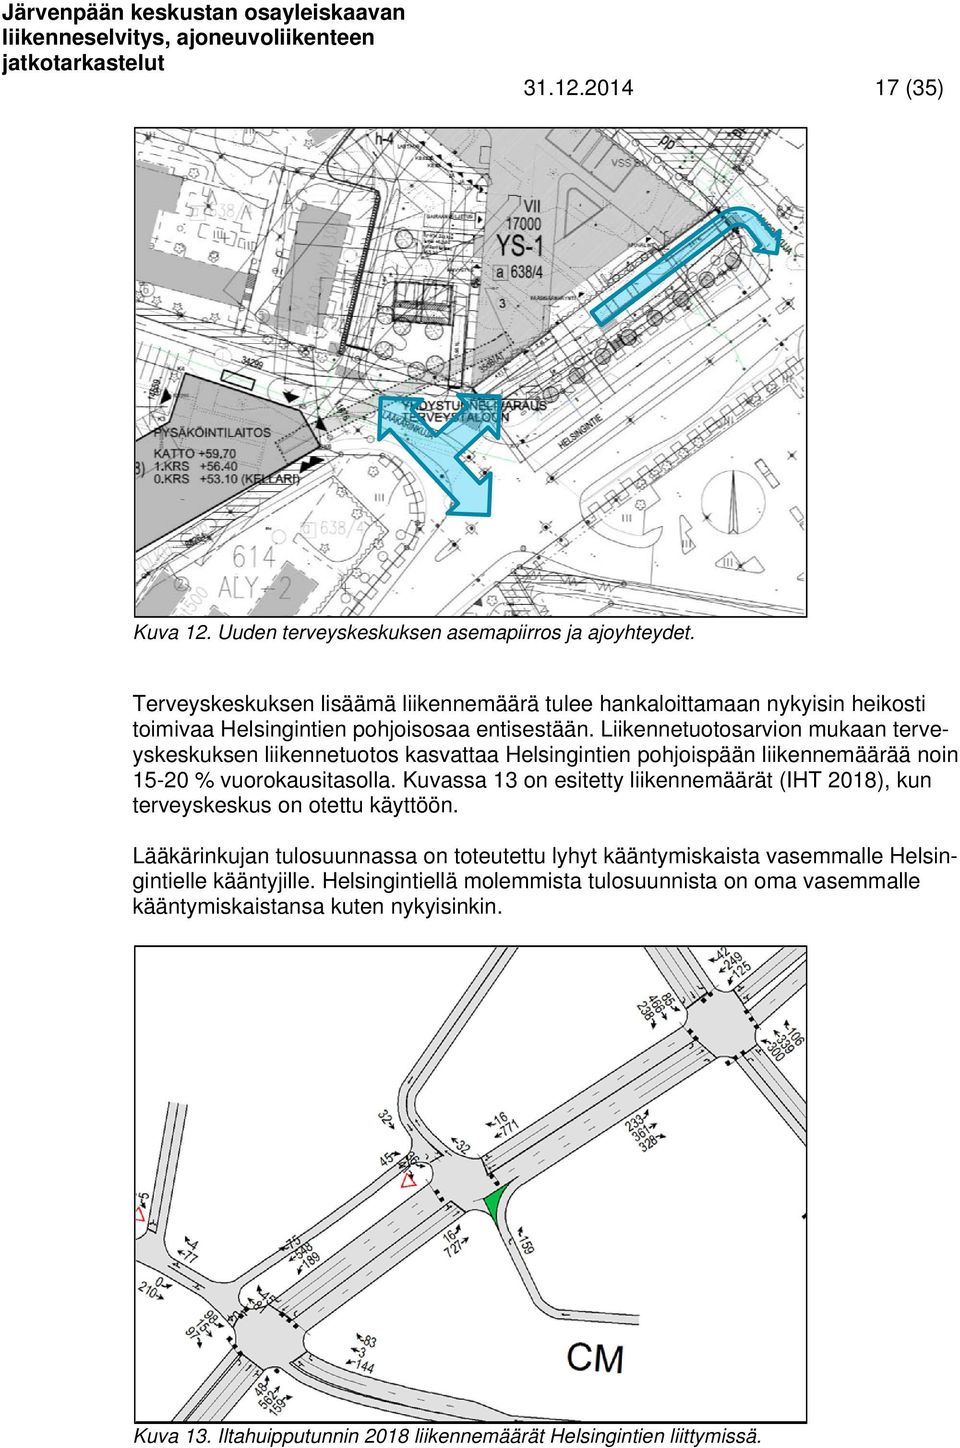 Liikennetuotosarvion mukaan terveyskeskuksen liikennetuotos kasvattaa Helsingintien pohjoispään liikennemäärää noin 15-20 % vuorokausitasolla.